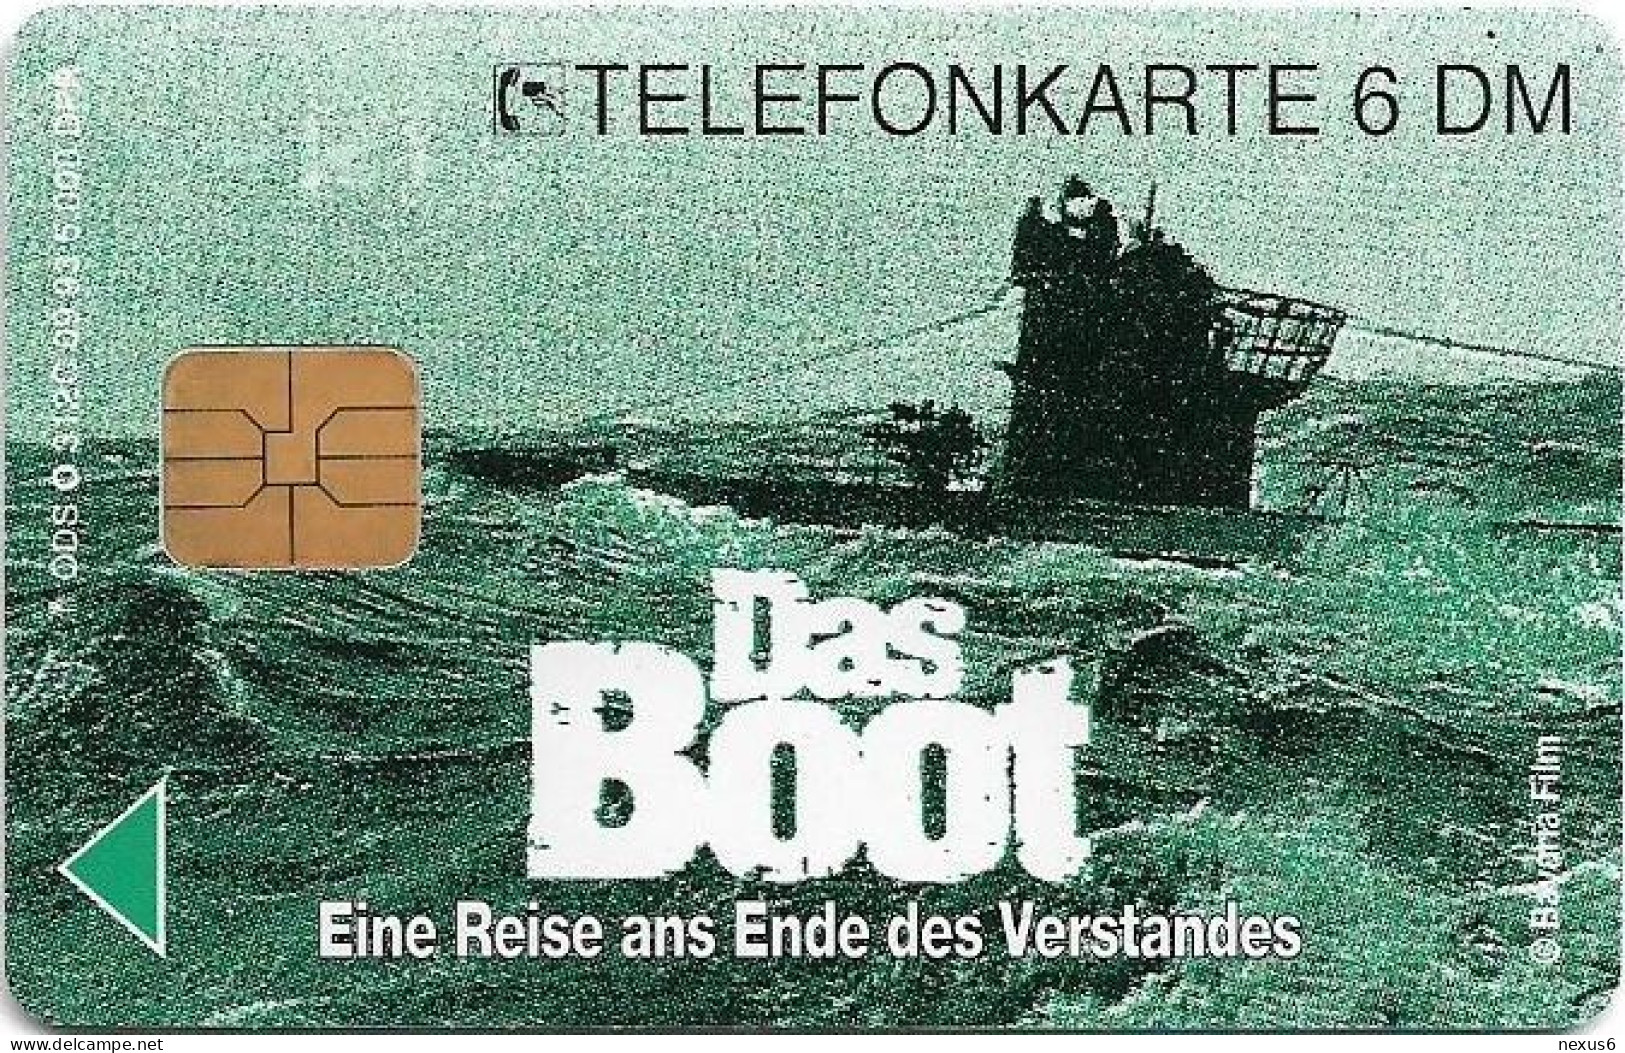 Germany - Das Boot (Film) 3 – Concentration Camps - O 0312C - 09.1993, 6DM, 5.000ex, Mint - O-Series : Series Clientes Excluidos Servicio De Colección